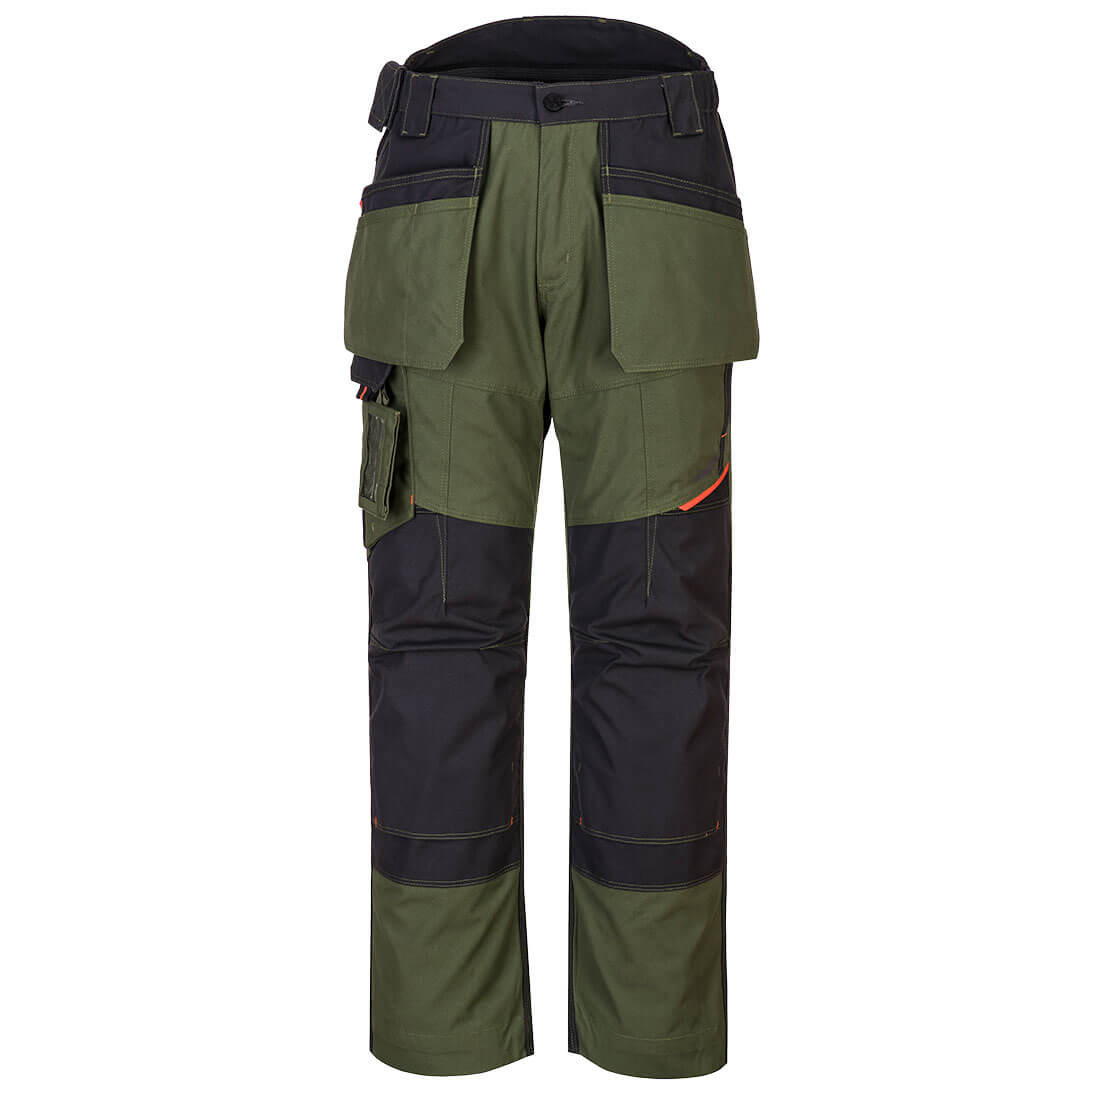 Pantalon Holster WX3 - Les vêtements de protection